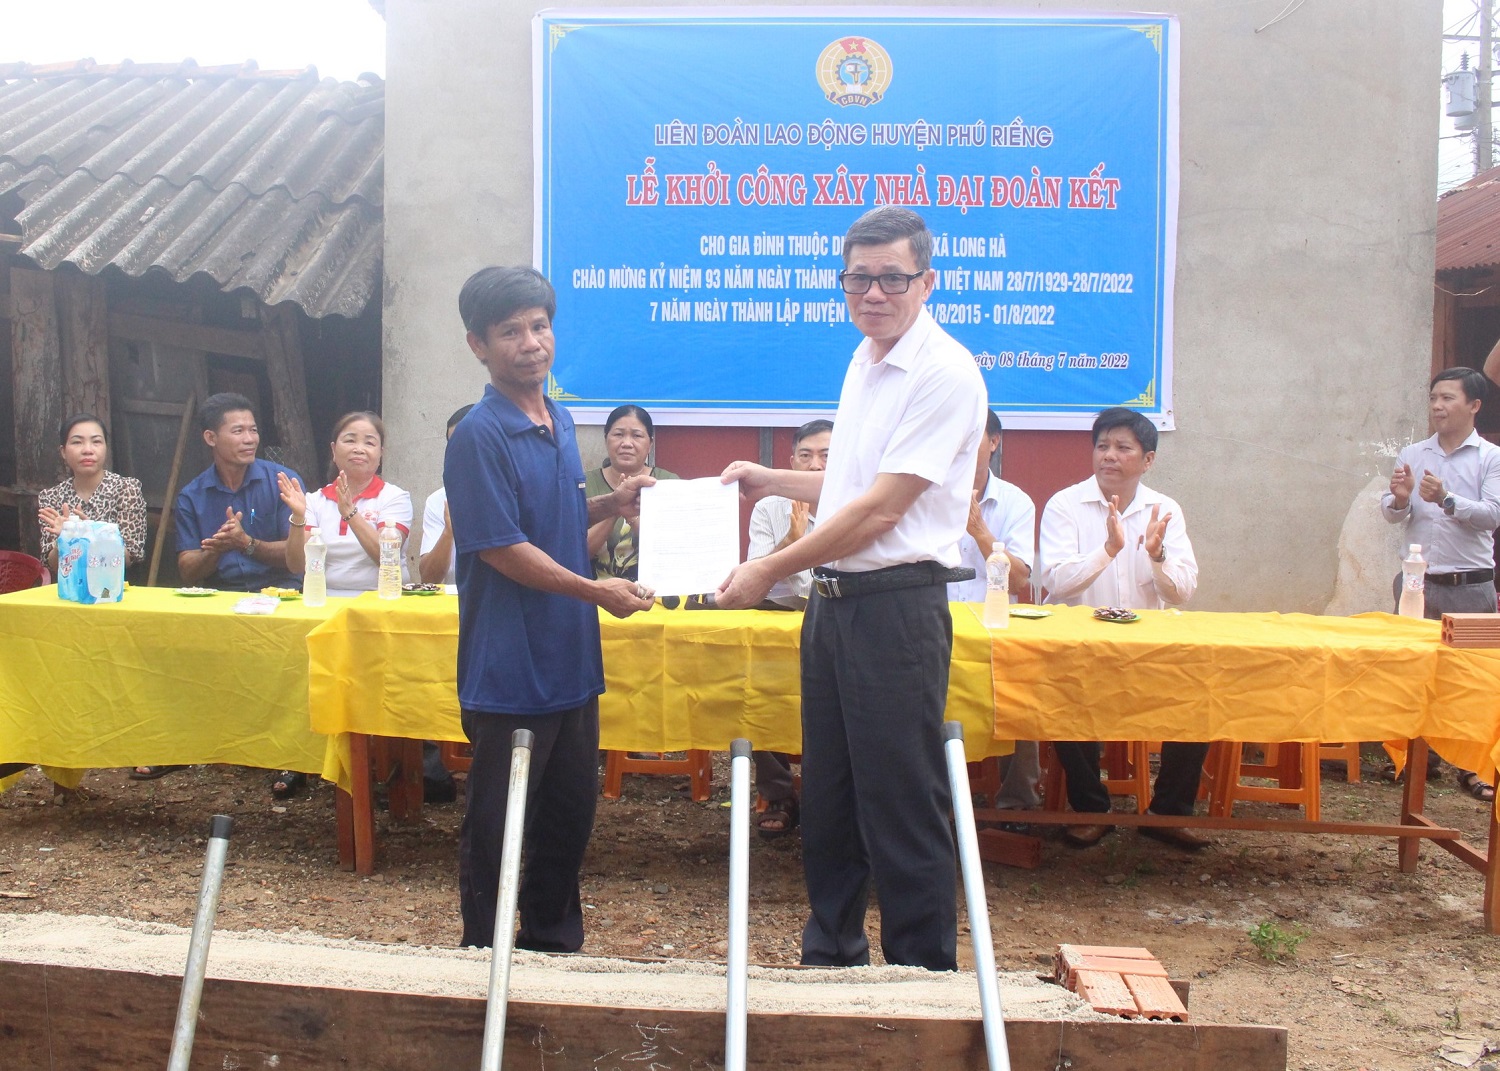 Liên đoàn Lao động huyện Phú Riềng tặng nhà đại đoàn kết cho hộ nghèo xã Long Hà.